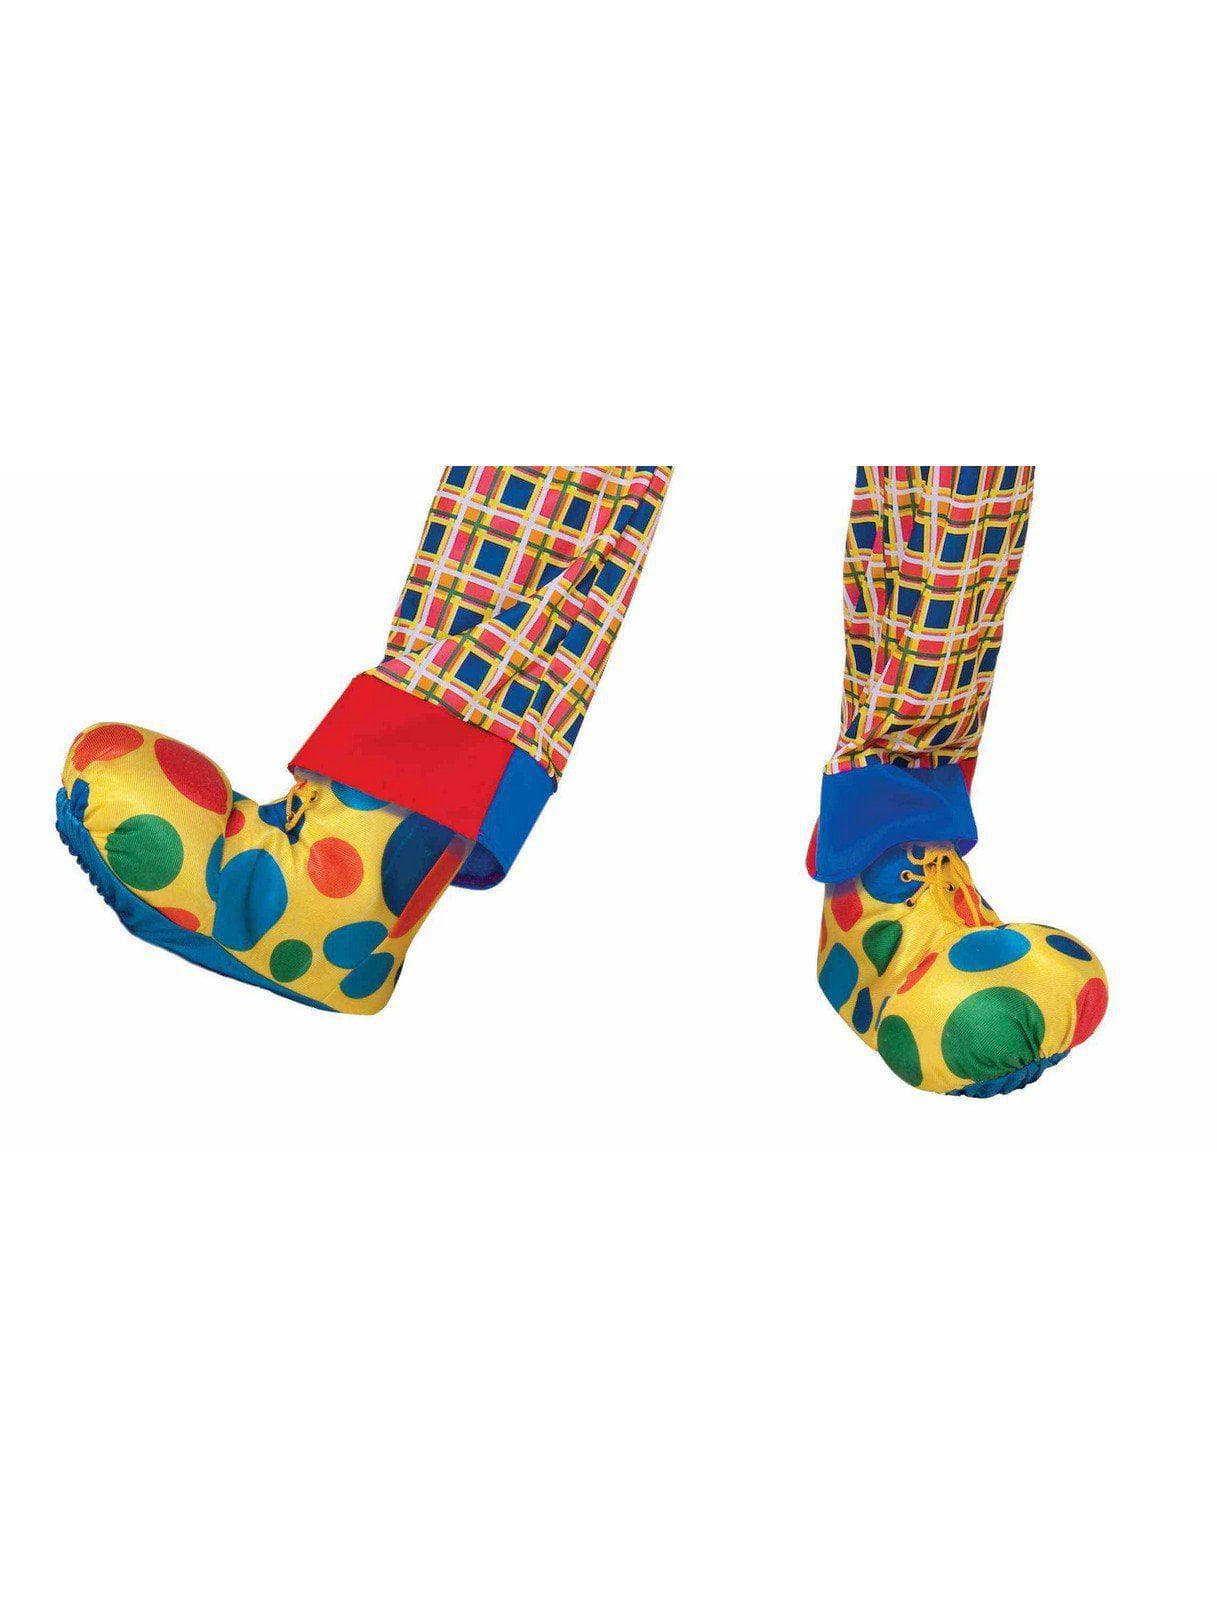 Fun Clown Shoe Covers - costumes.com